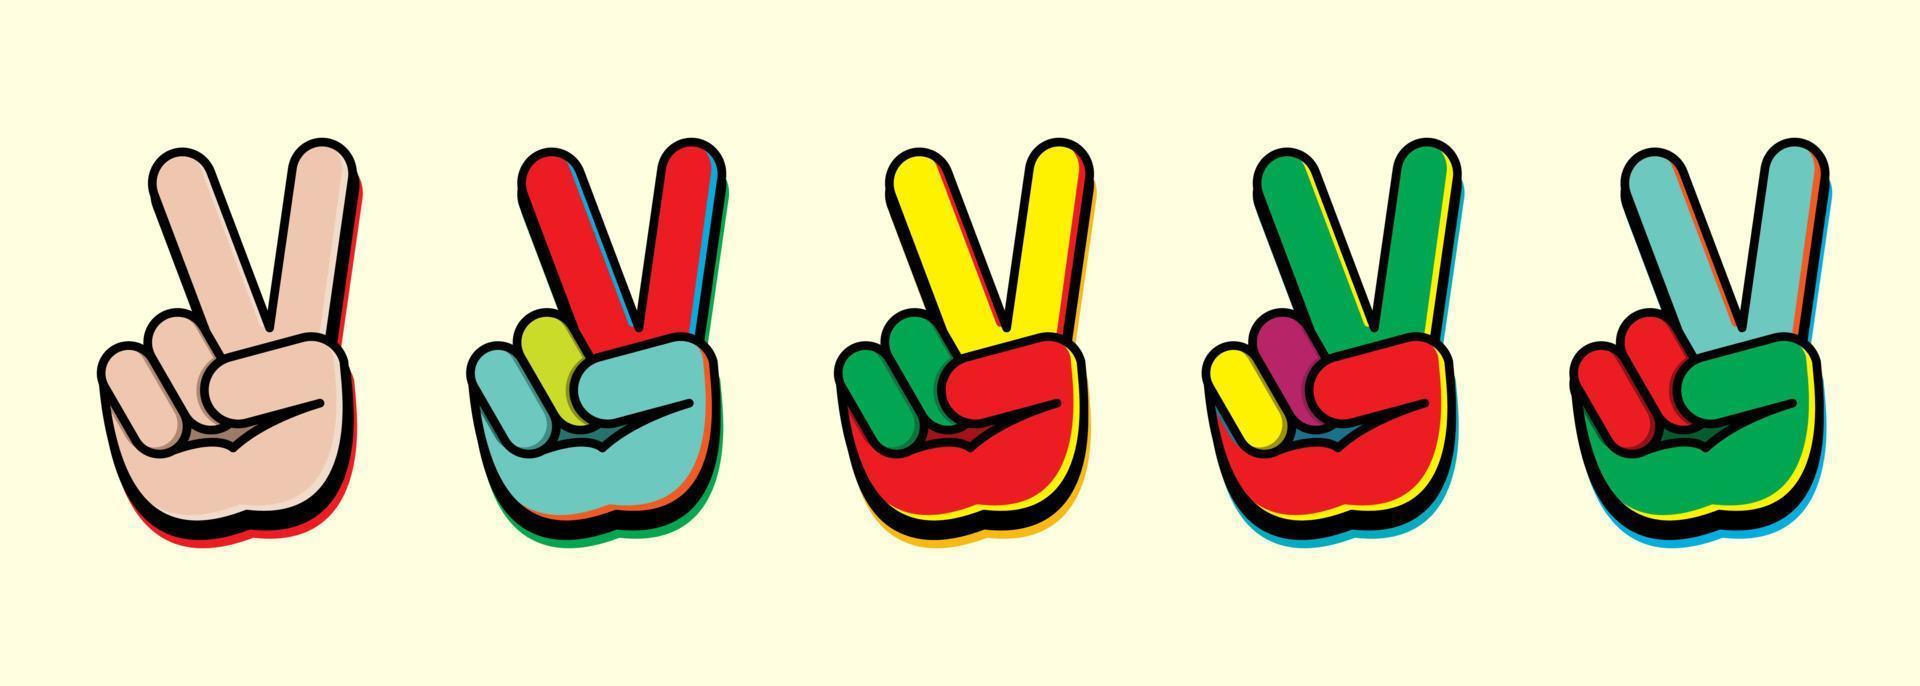 v teken hand- gebaar symbool voor zege in stelt. voor ontwerp elementen, afdrukken, stickers. vector